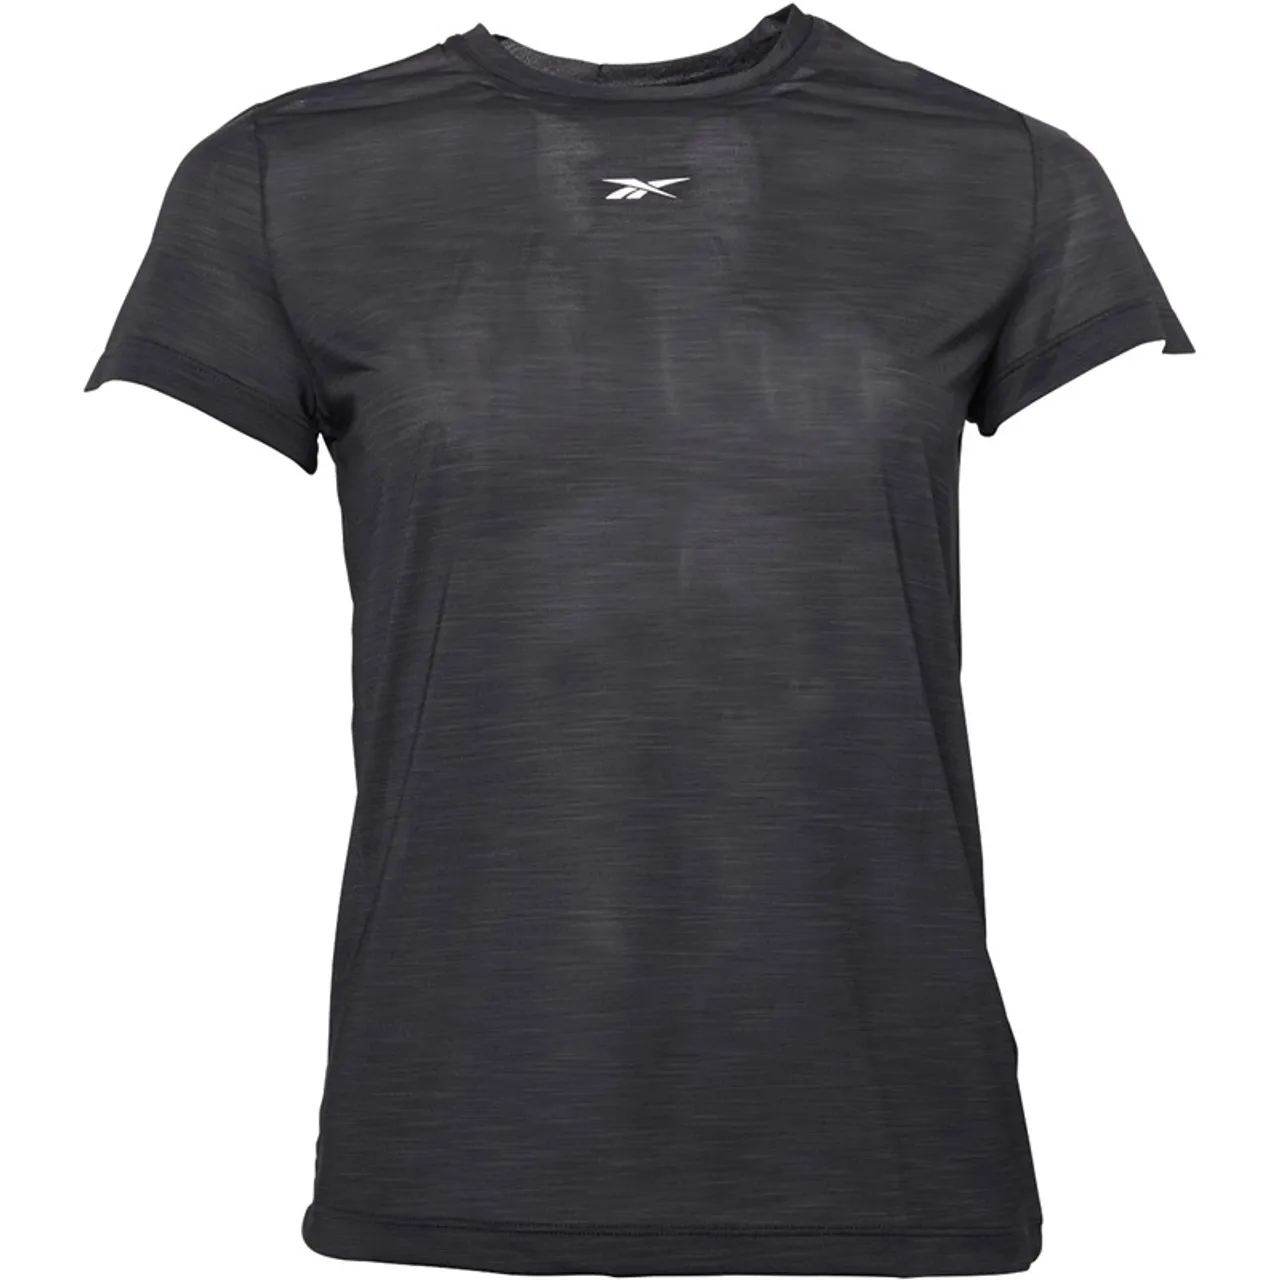 Reebok Womens Workout Ready Activchill T-Shirt Black